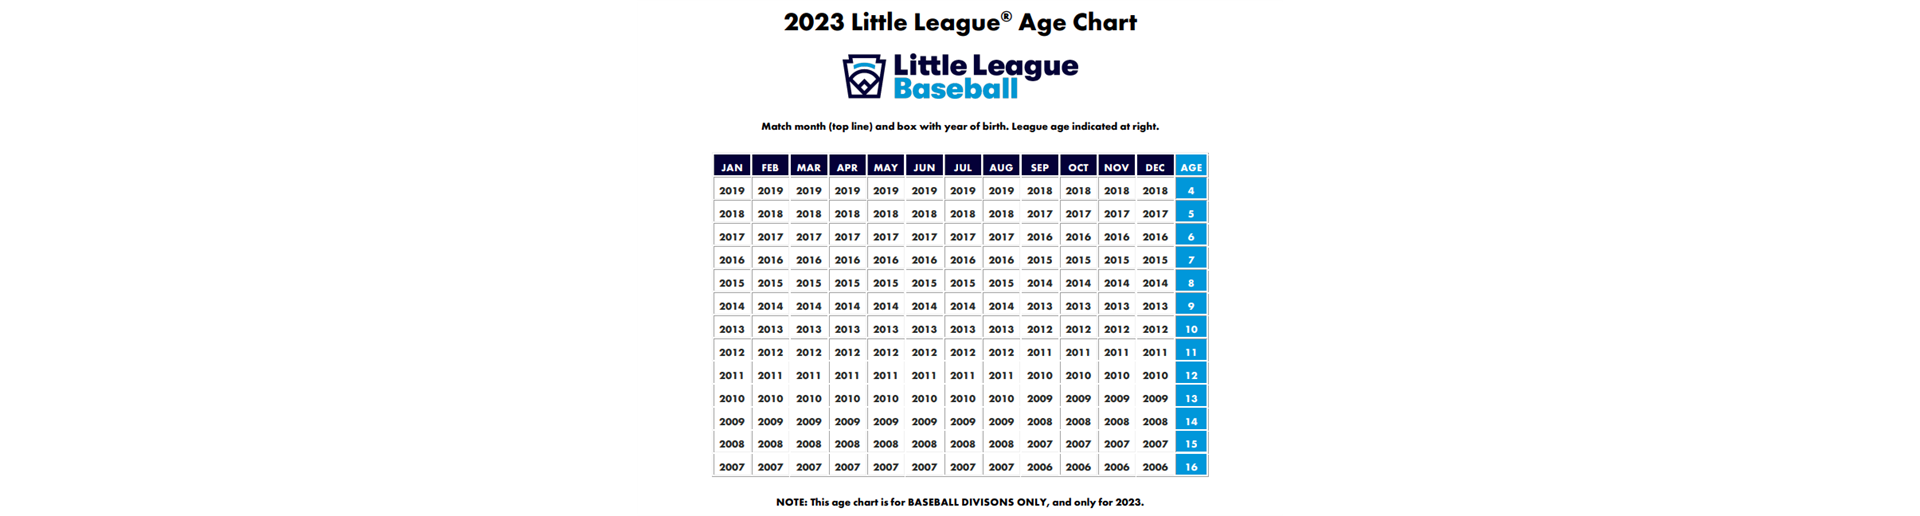 Age Chart 2023